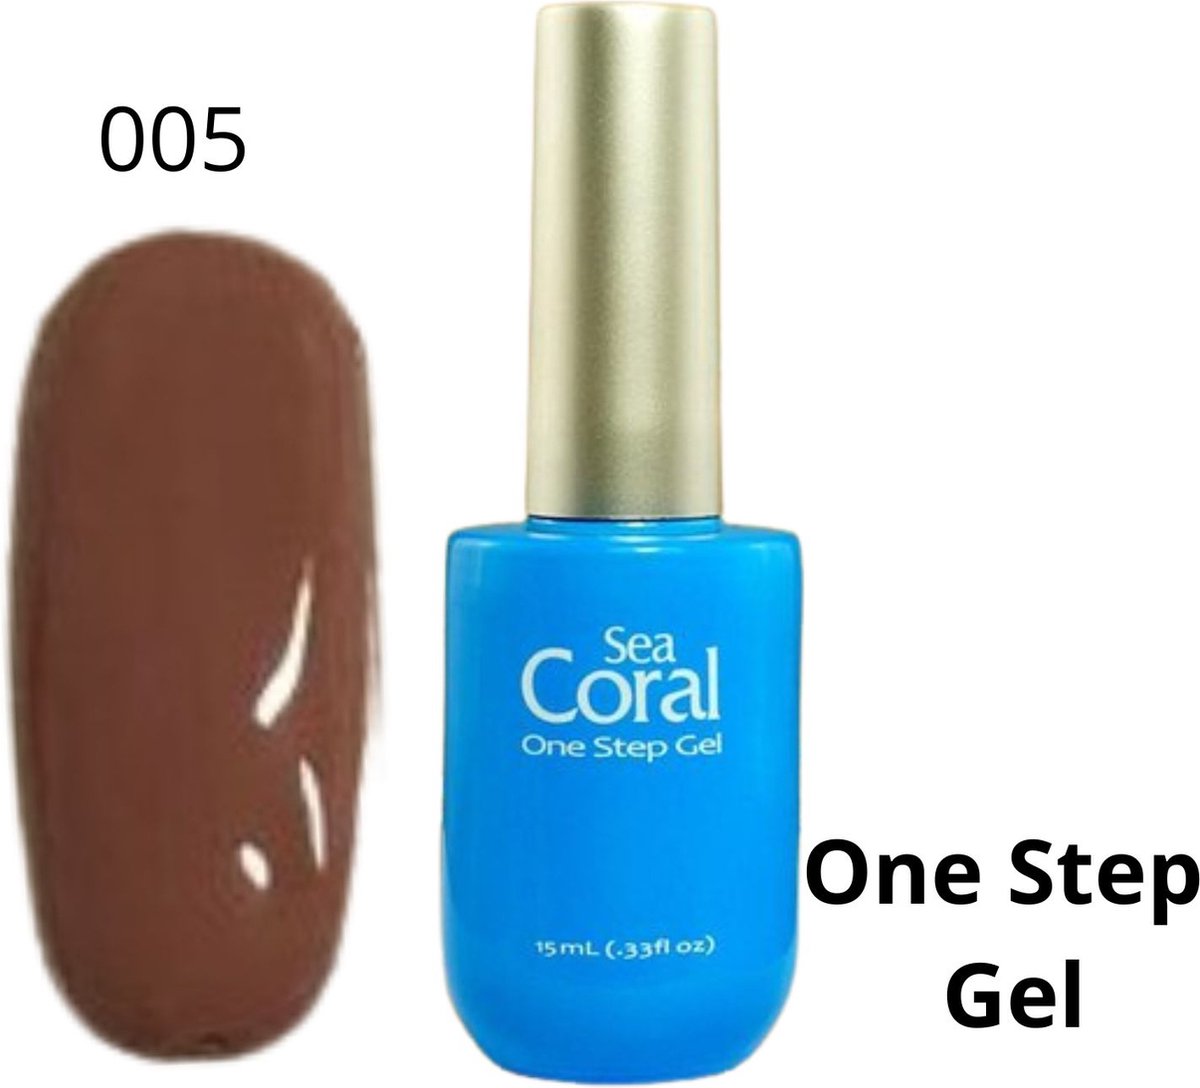 SeaCoral One Step No Wipe Gellak - Gel Nagellak - GelPolish – geen plaklaag - zónder kleeflaag, geschikt voor UV en LED – Bruin 005